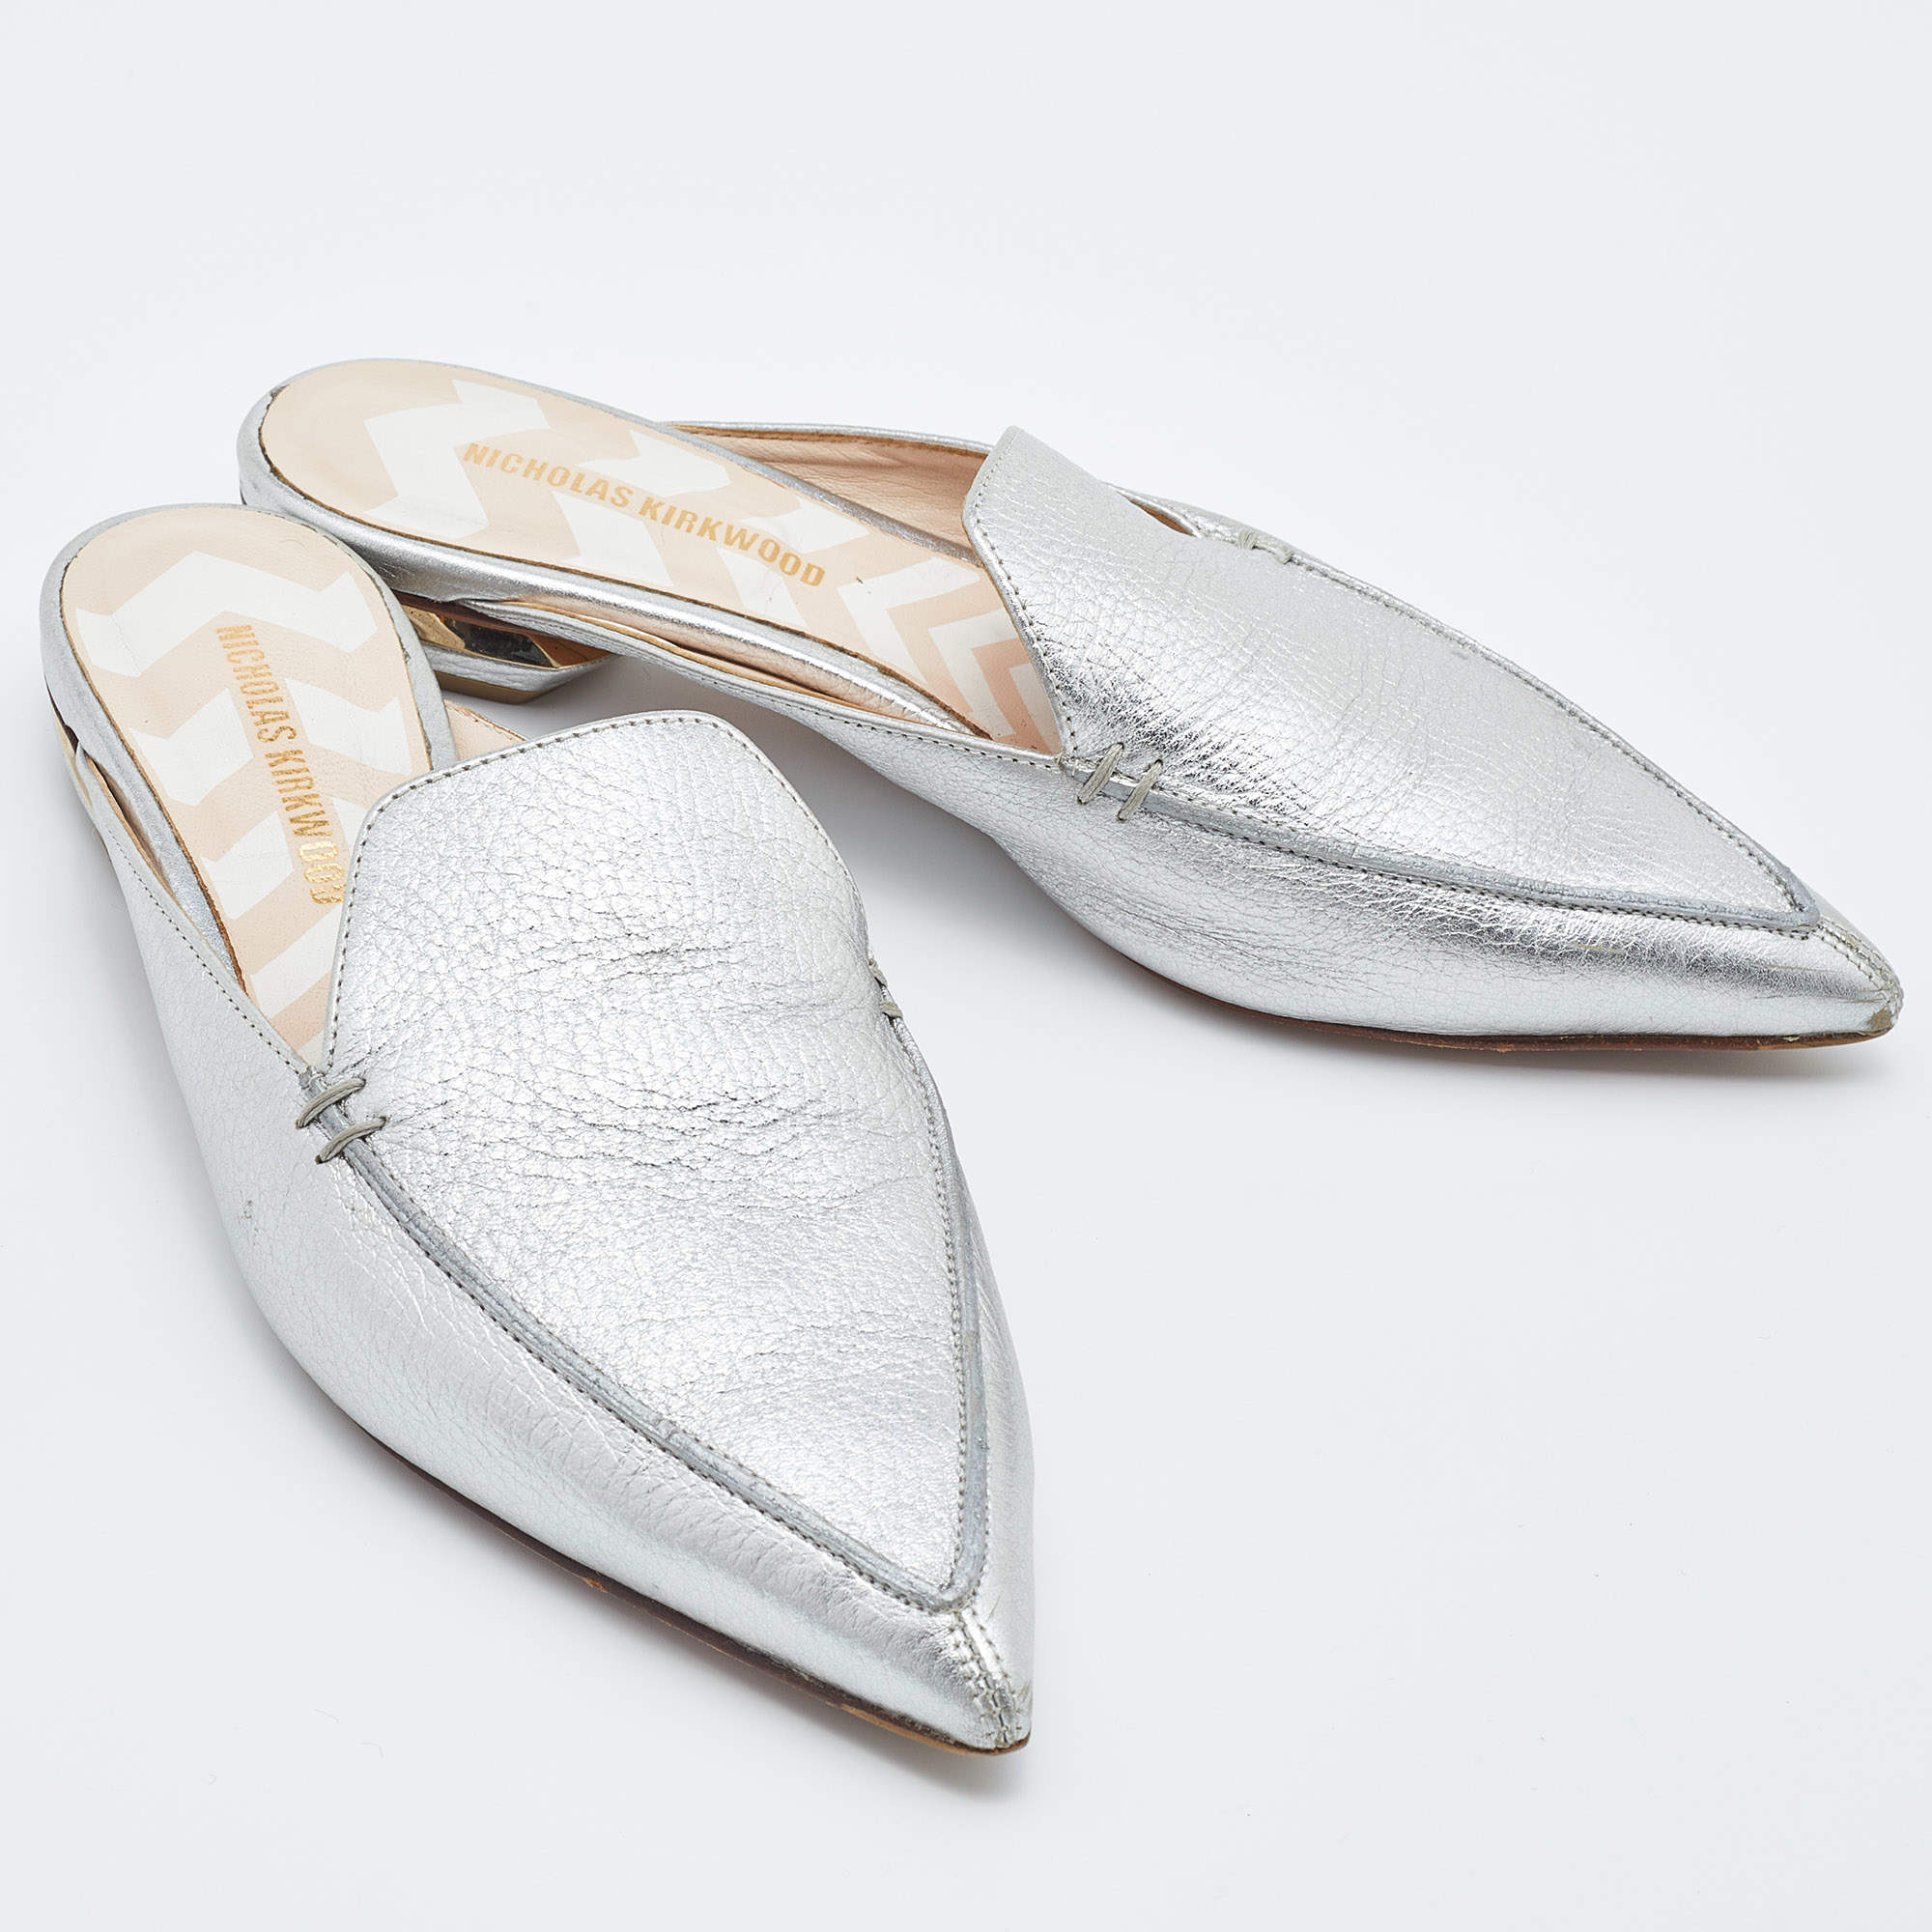 Nicholas Kirkwood Women's 18mm Beya Knot Leather Flat Mules - White